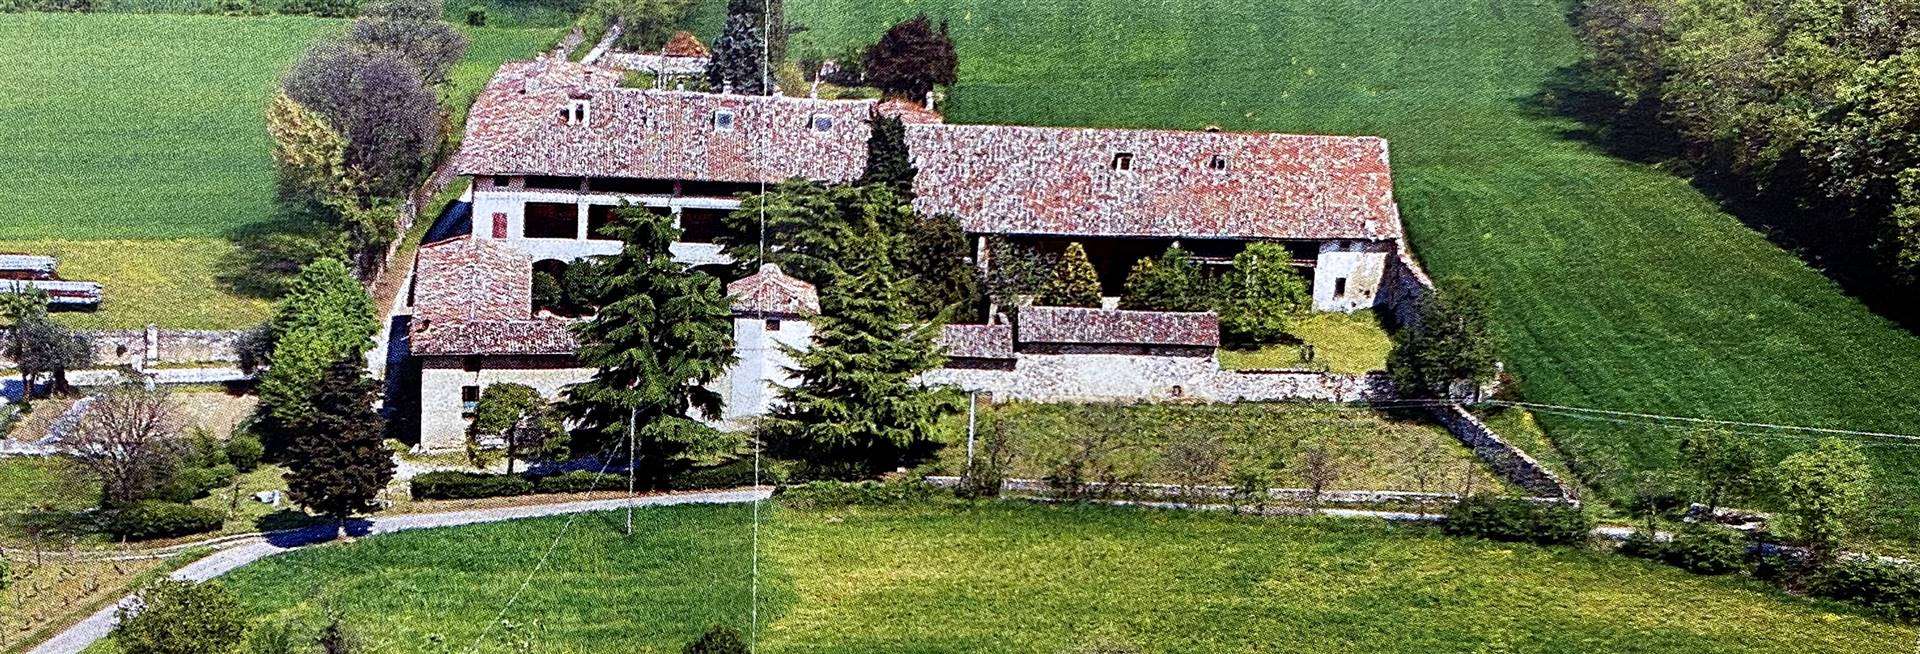 Rustico / Casale in vendita a Lonato, 20 locali, zona Località: SAN TOMASO, prezzo € 1.900.000 | PortaleAgenzieImmobiliari.it